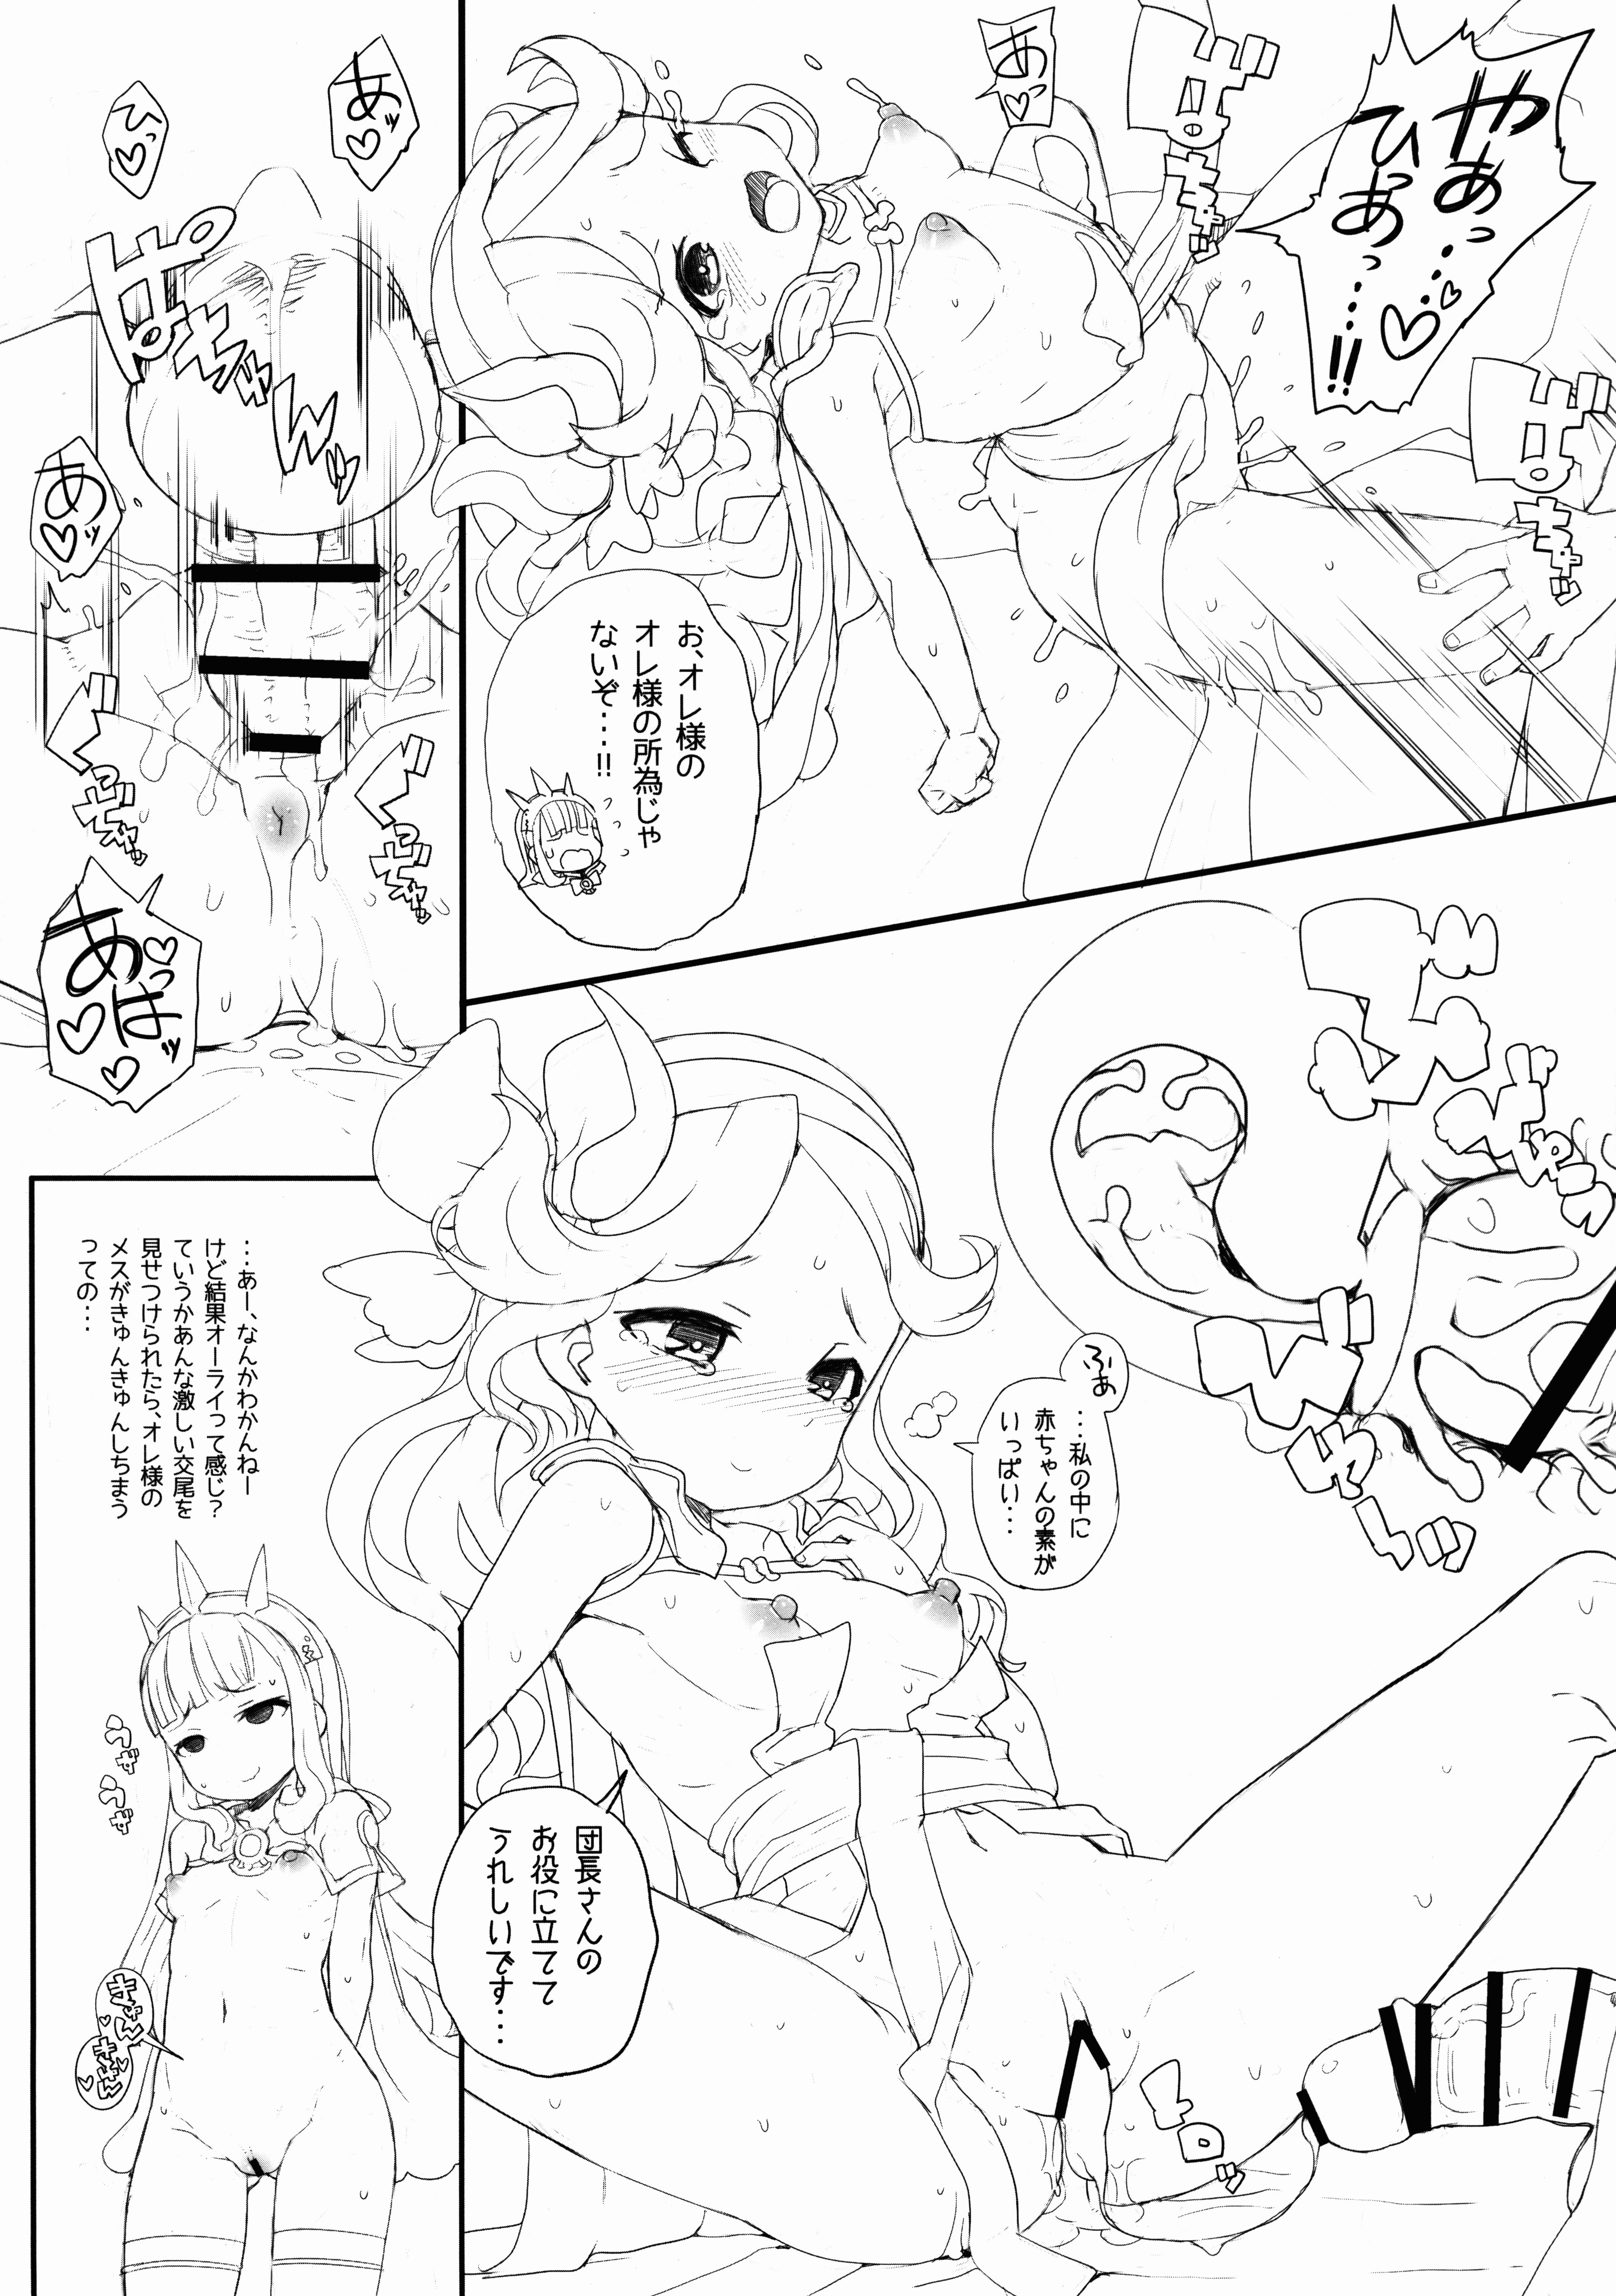 Tattoos Honjitsu no Danchou Touban! - Granblue fantasy Kashima - Page 7